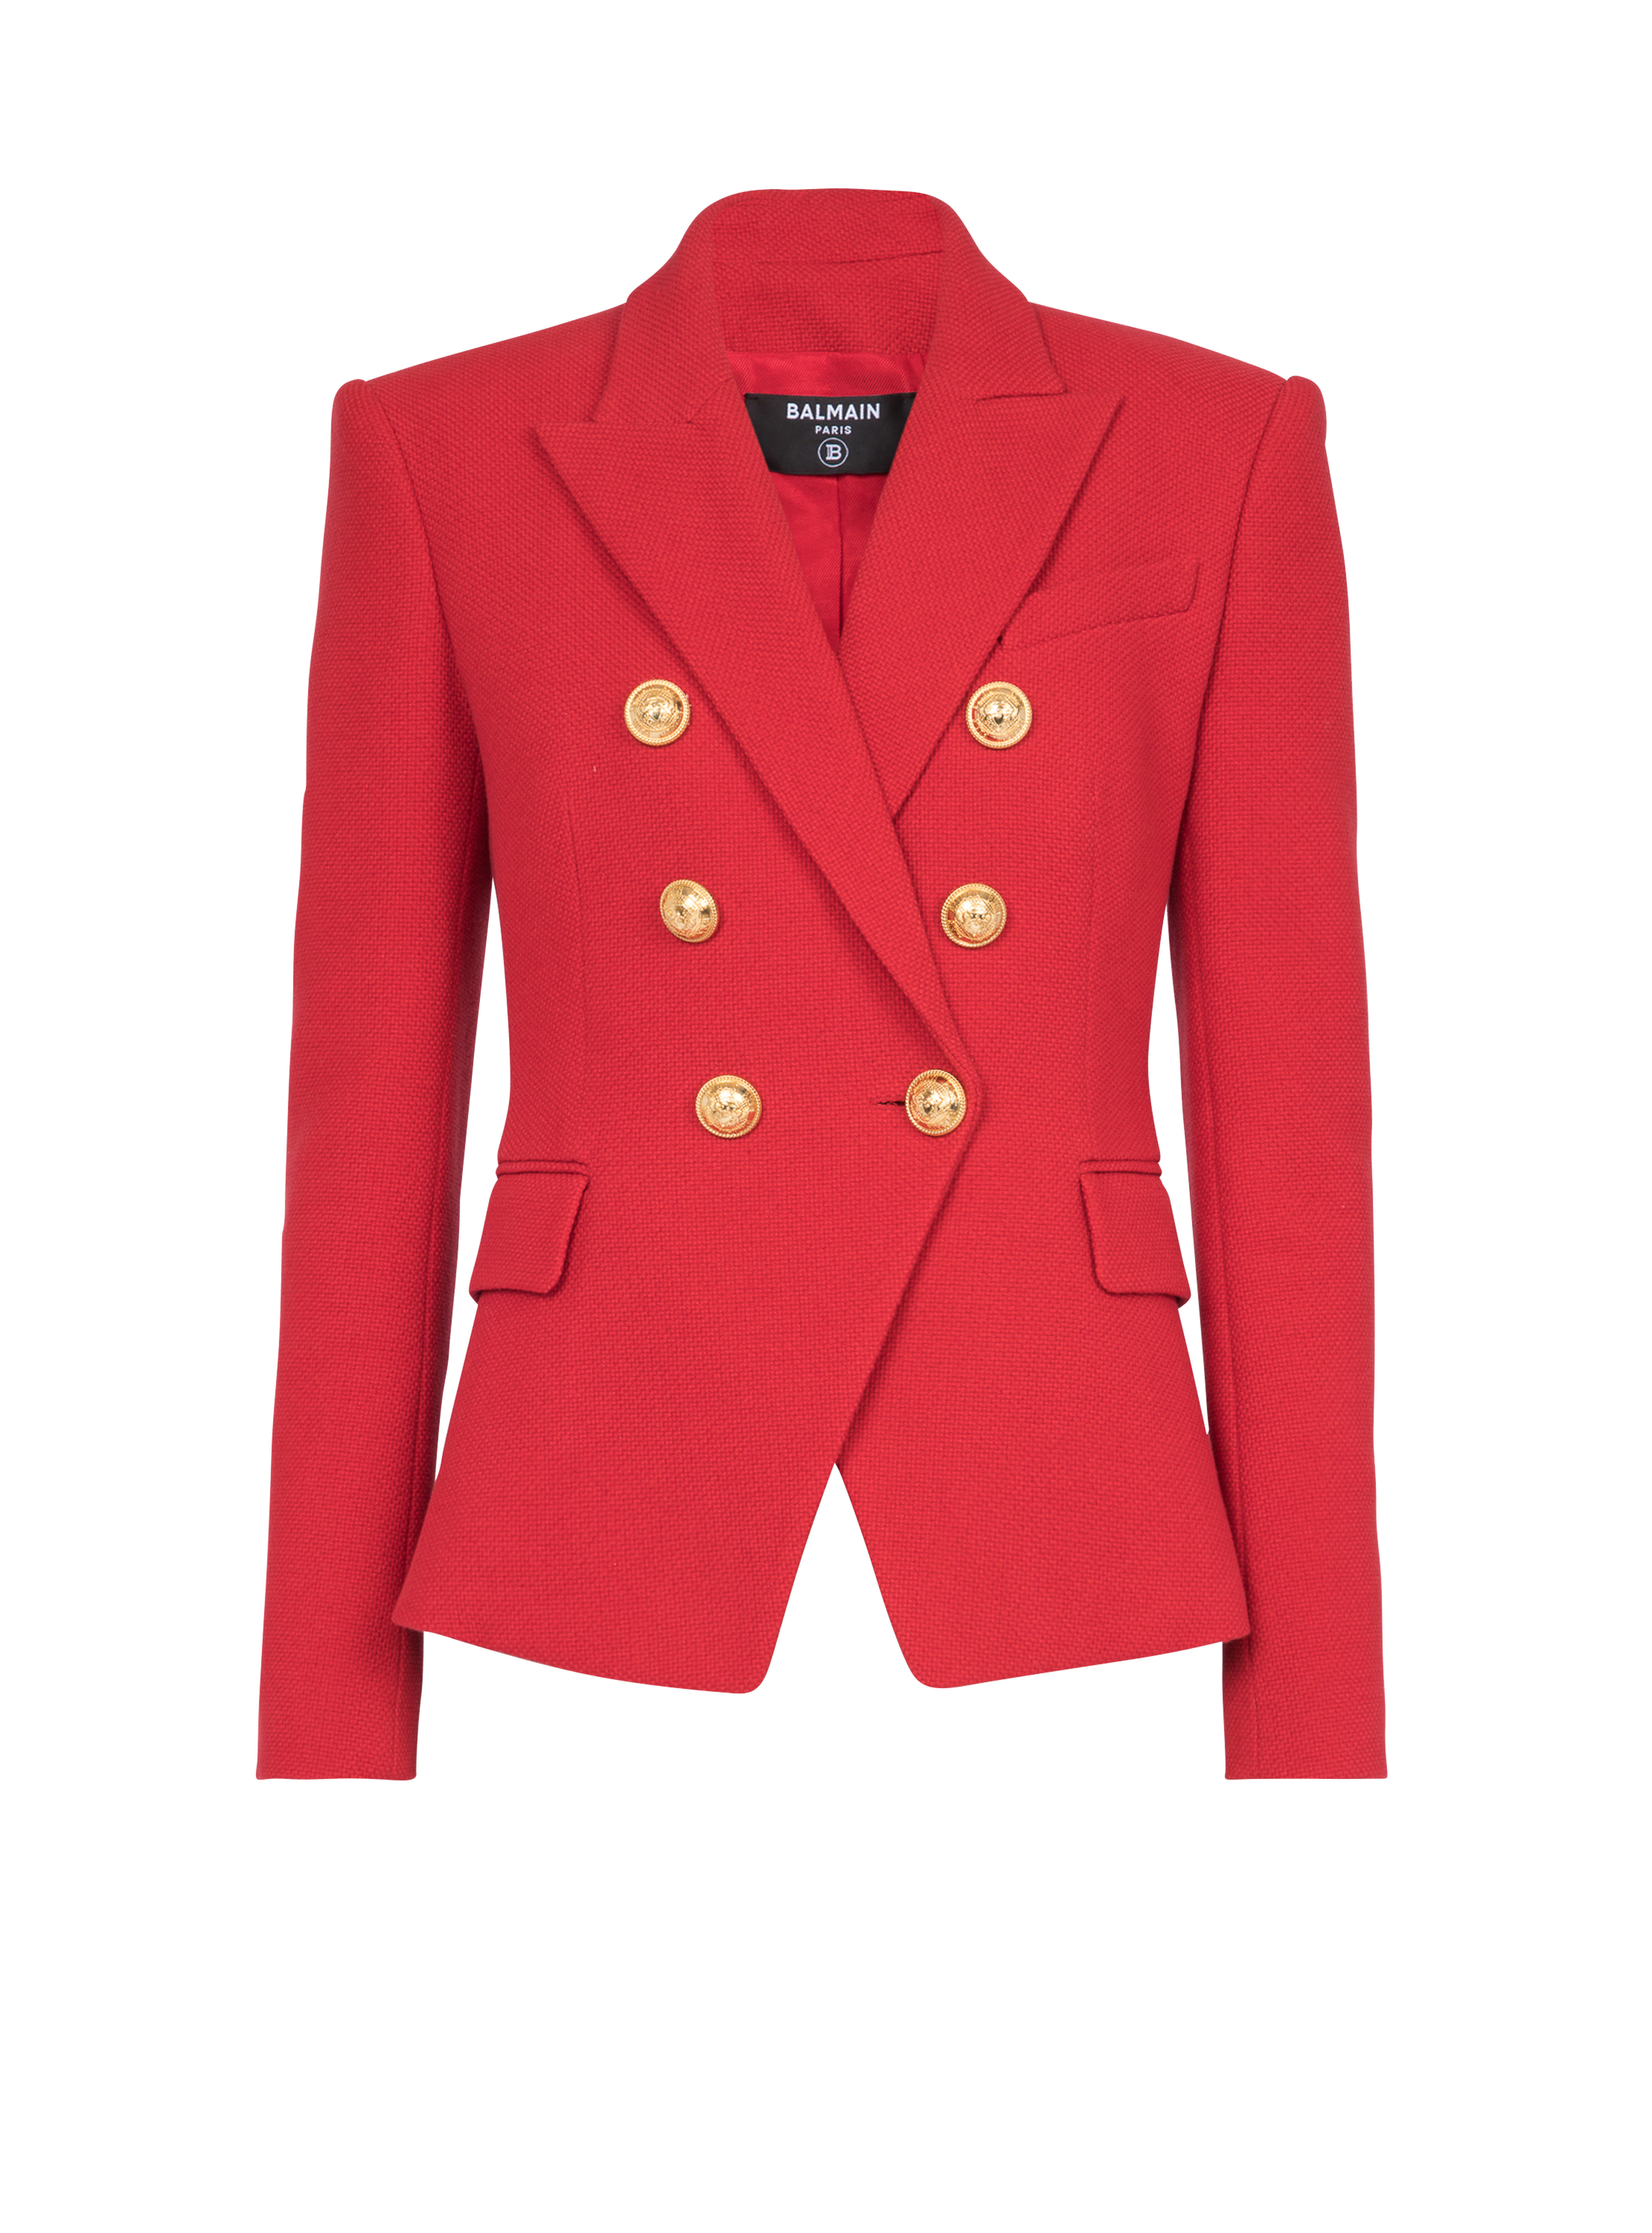 Cotton piqué double-buttoned jacket, red, hi-res